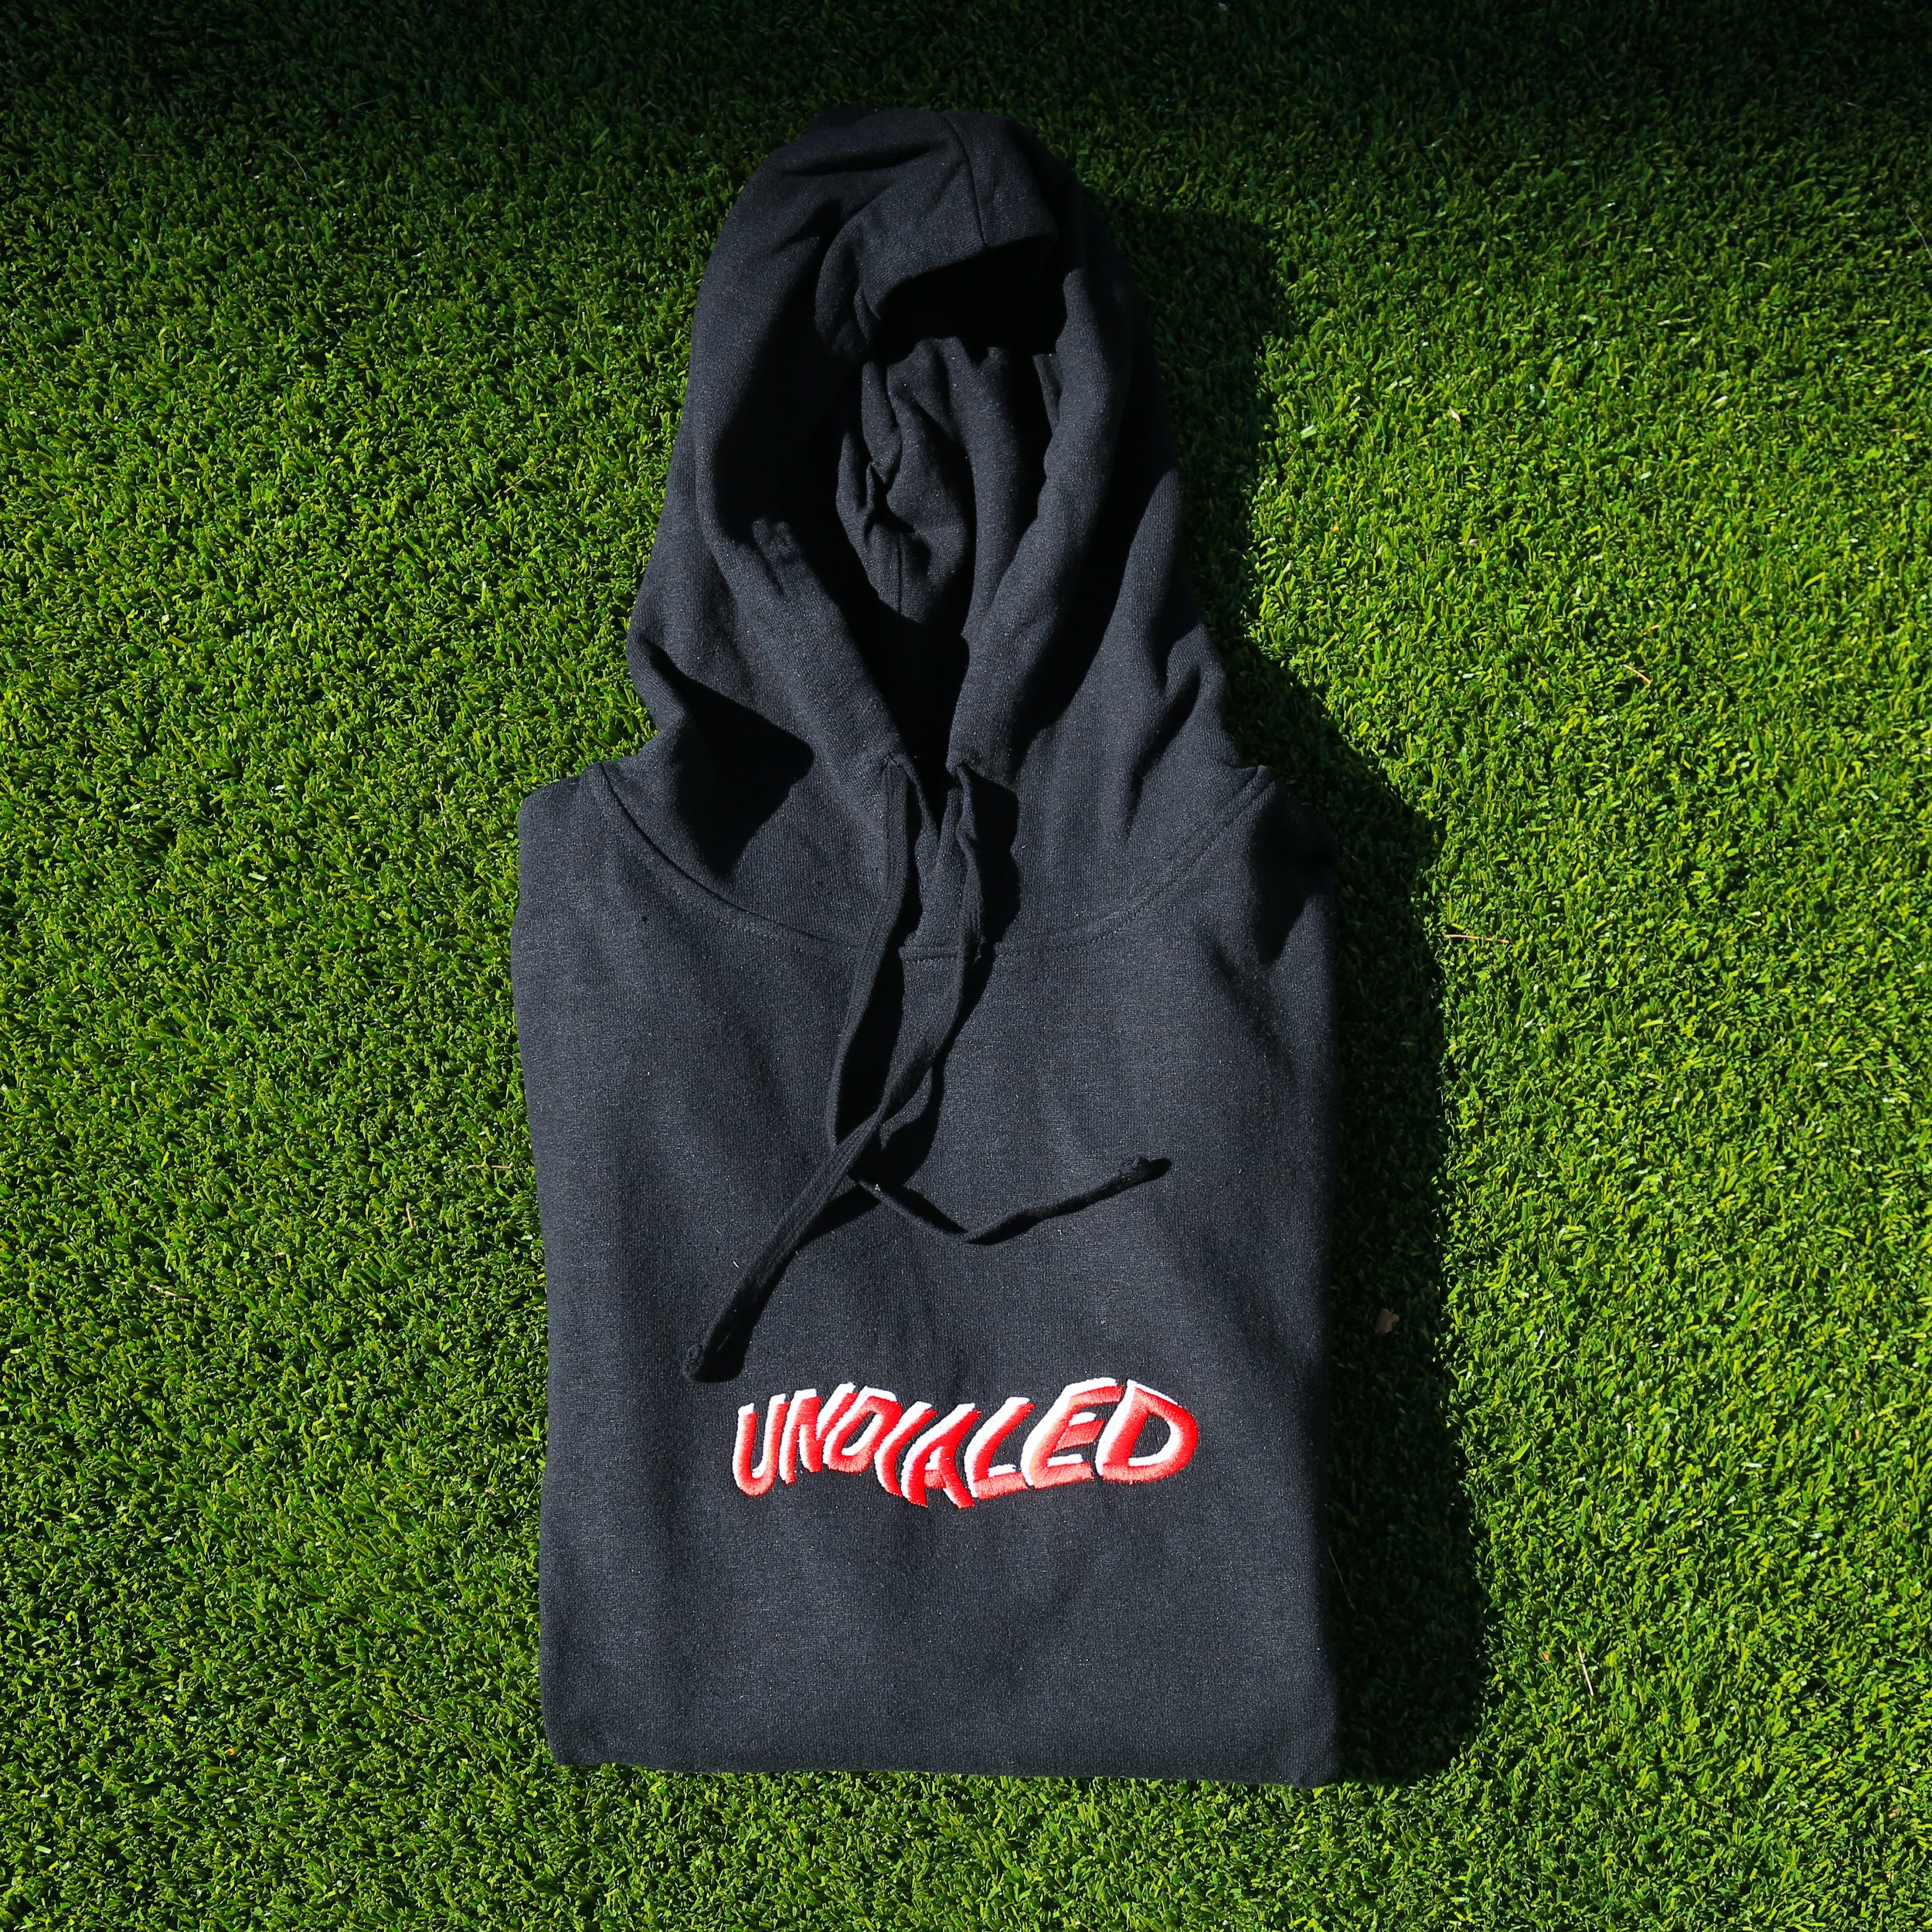 Red UNDIALED Black Hemp Hoodie — UNDIALED